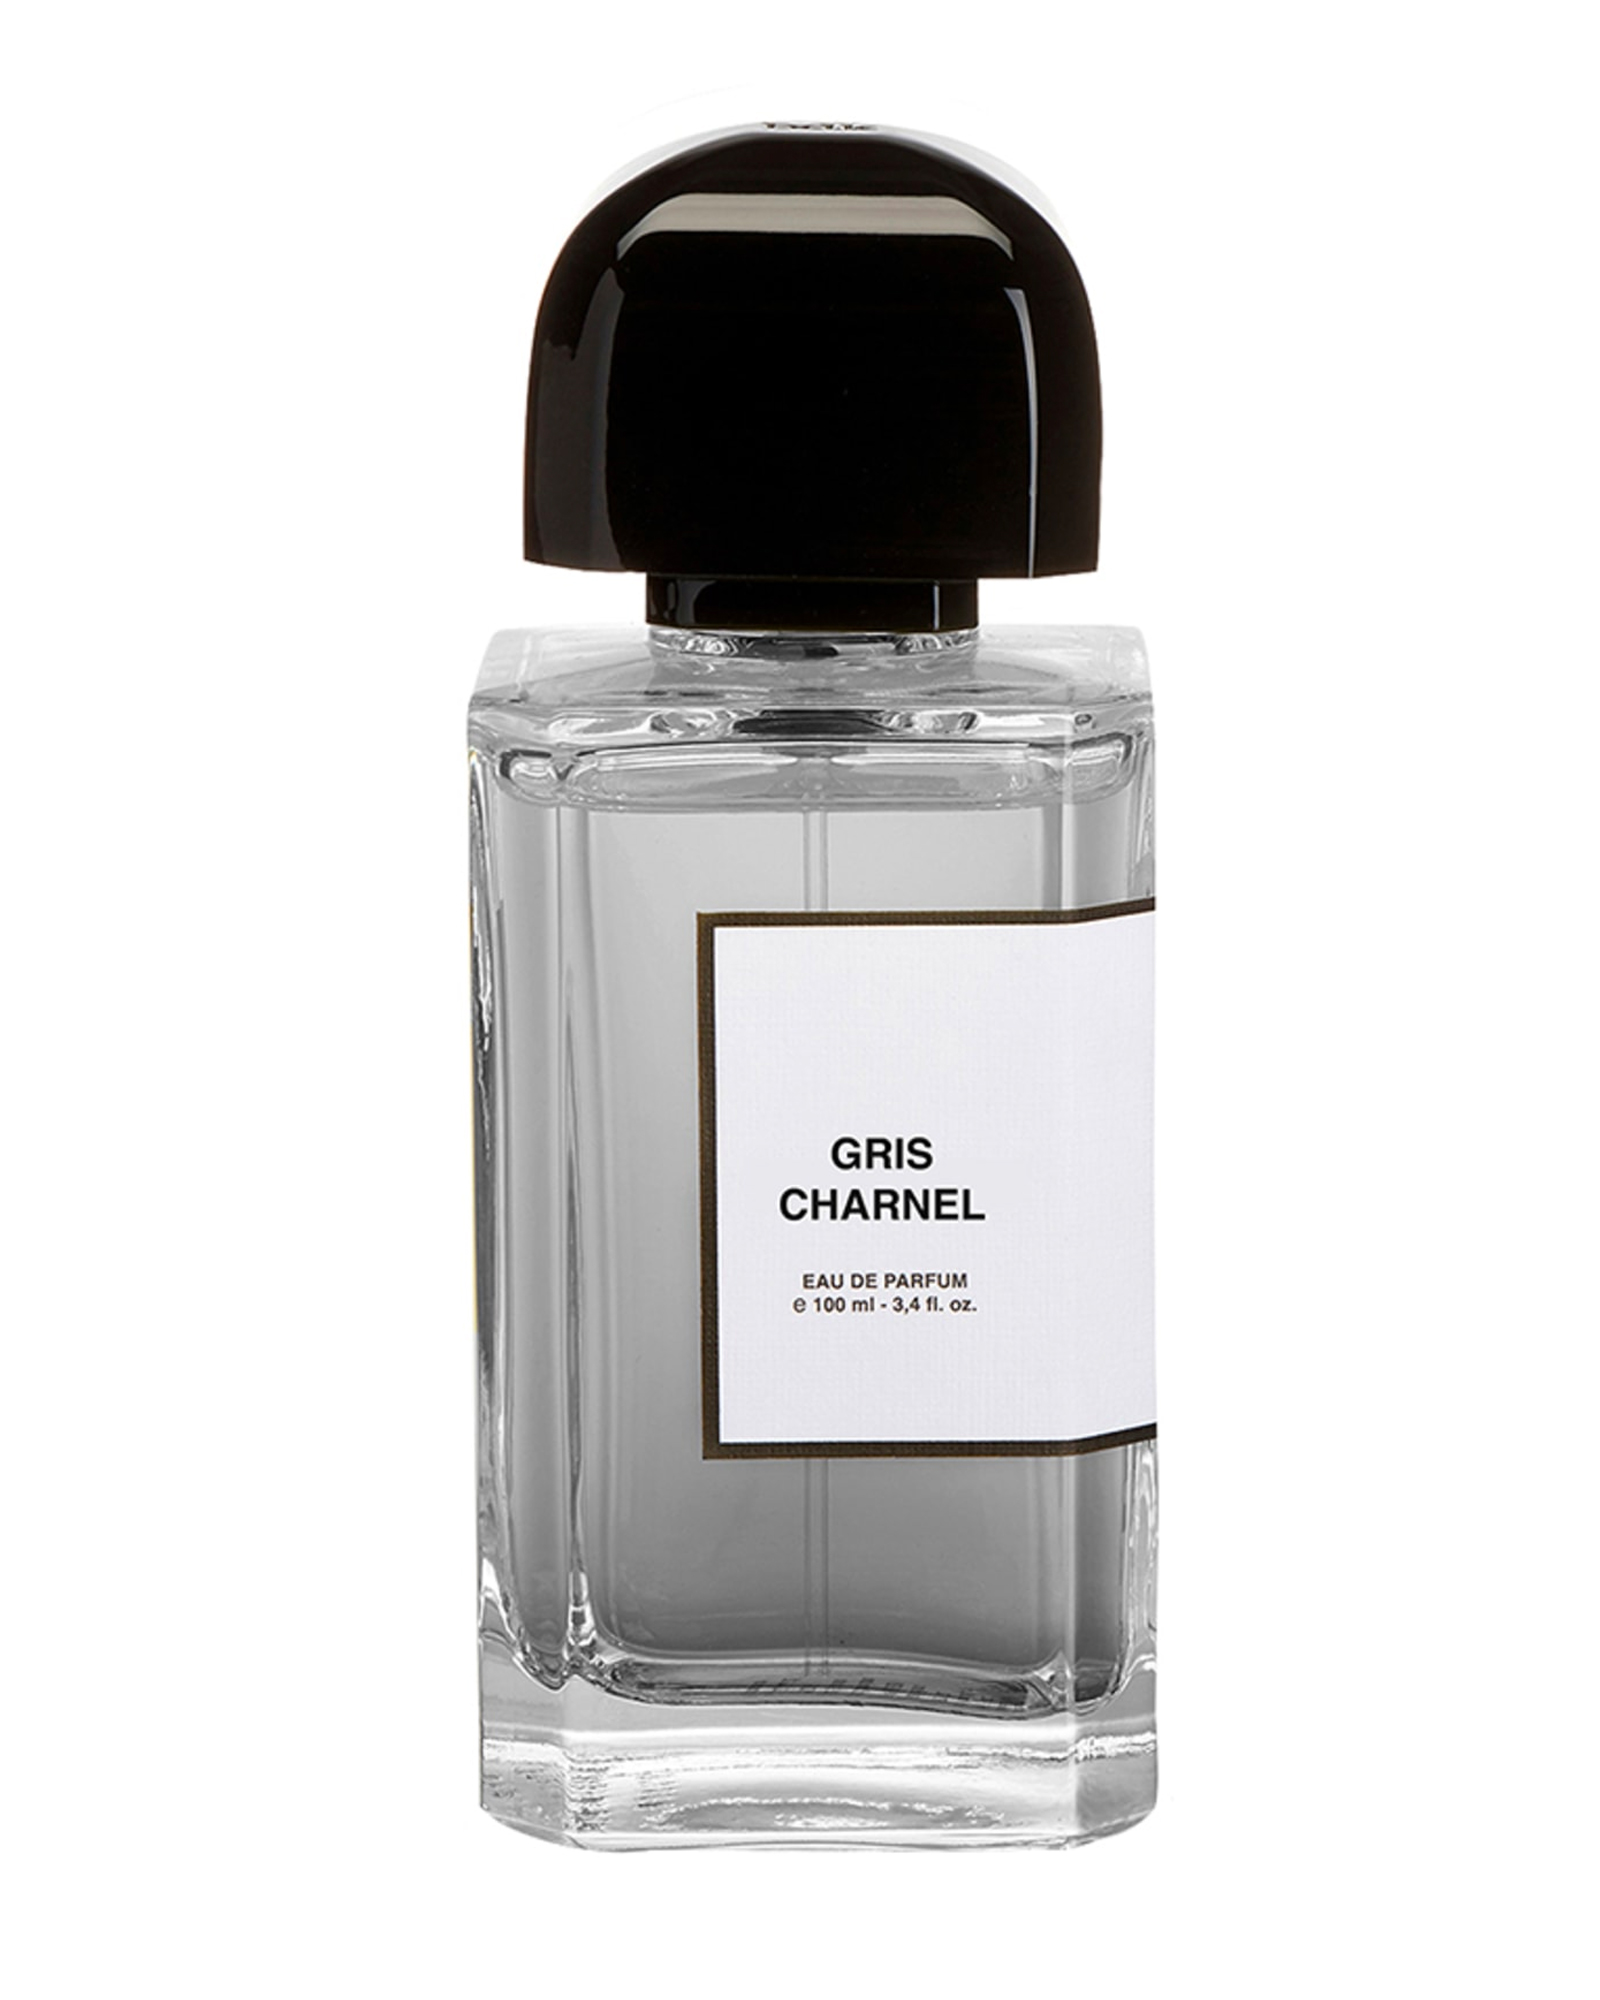 perfumes, gris charnel bottle, luxury perfume bottle